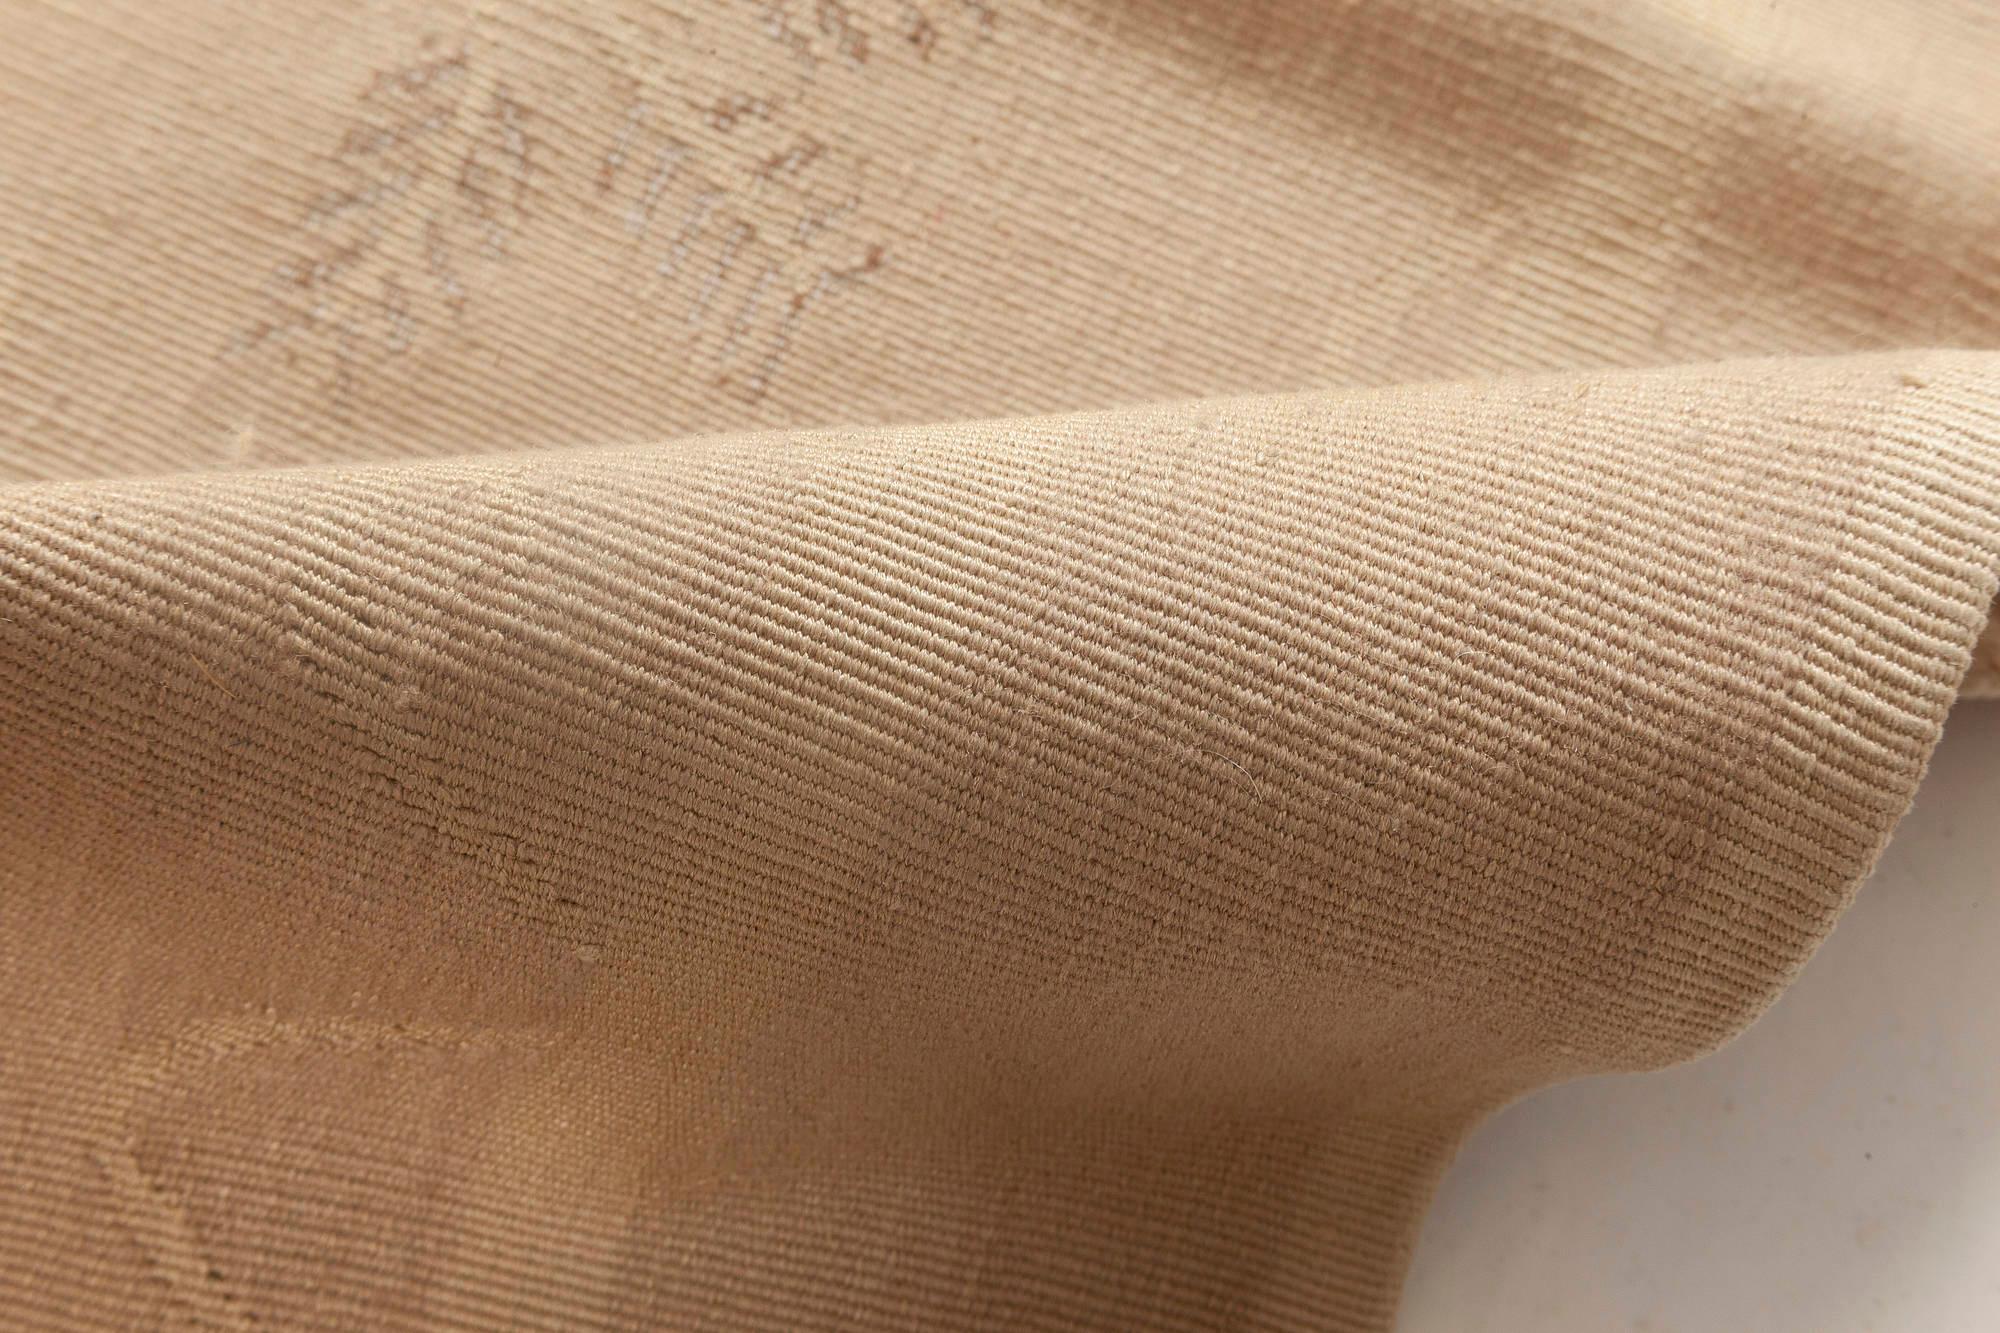 Contemporary Aubusson design beige rug by Eric Cohler for Doris Leslie Blau
Size: 5'10